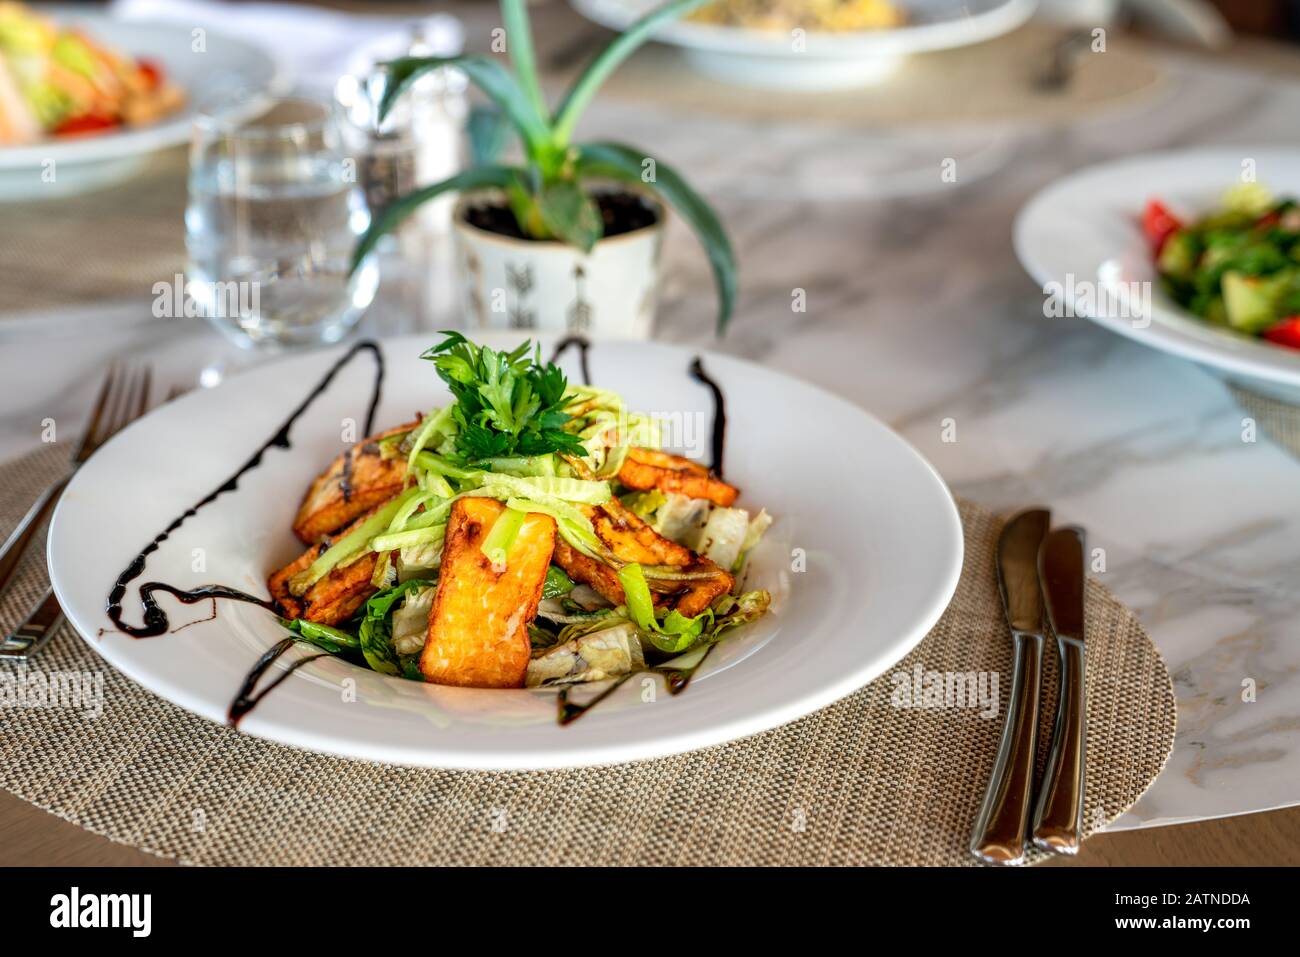 Ein köstlicher gegrillter oder gerösteter Hellumi-Käse-Salat wird in einem eleganten Restaurant oder Hotel serviert Stockfoto